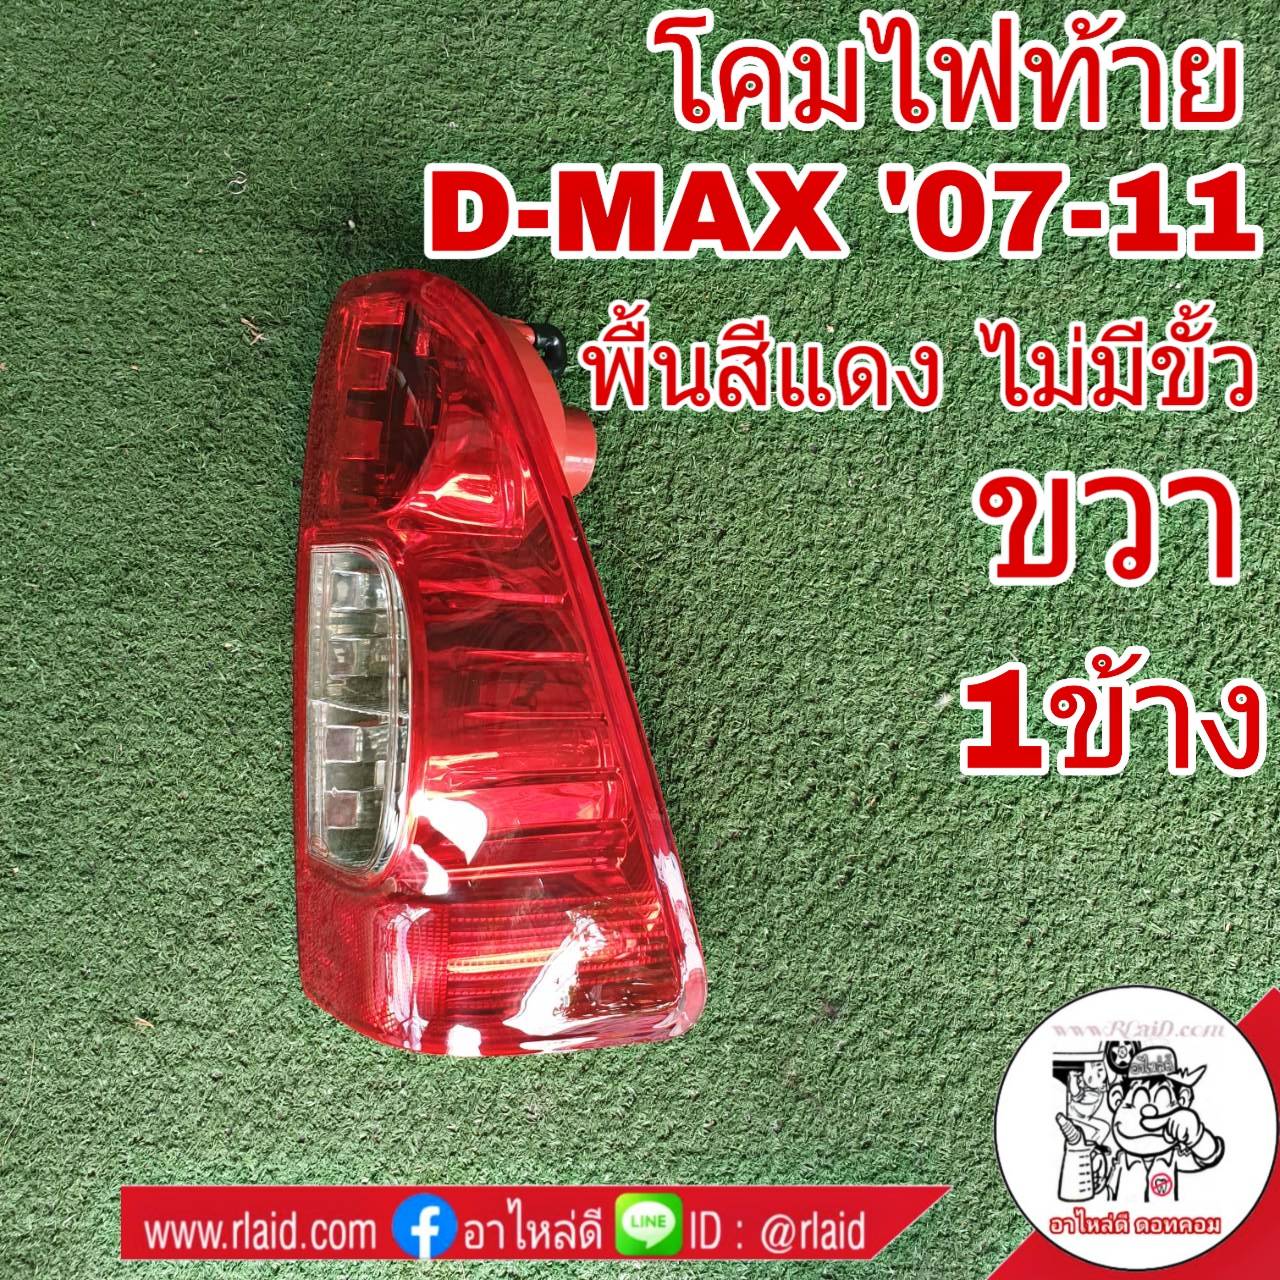 โคมไฟท้าย ขวา ISUZU D-MAX ดีแม็ก ปี2007-11 พื้นสีแดง ไม่มีขั้ว ไฟท้าย (ขวา 1ข้าง) 04-50100R